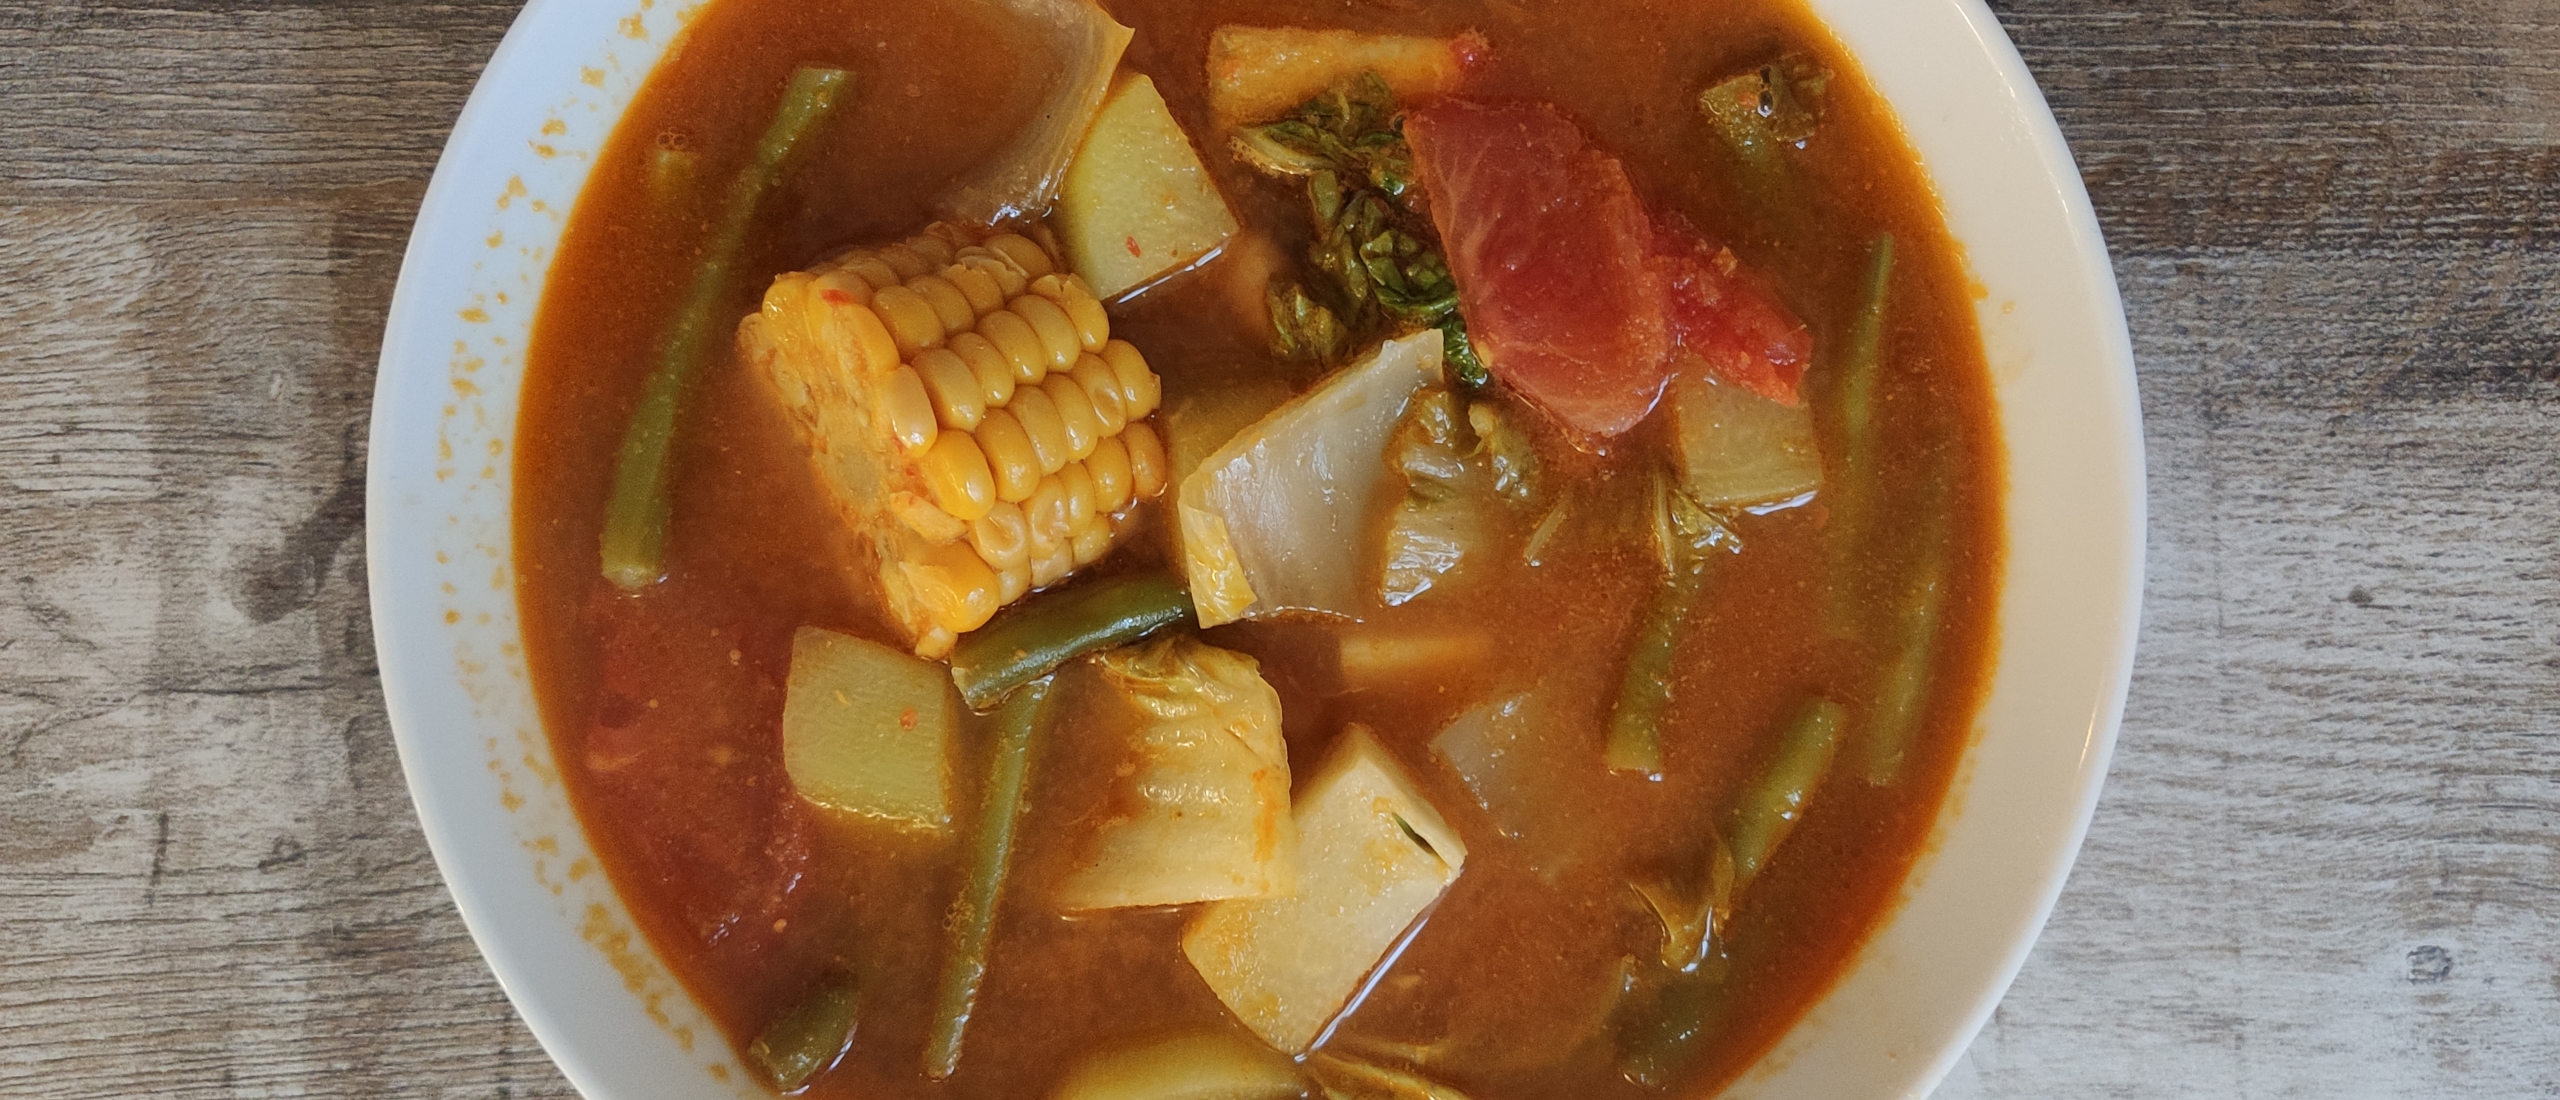 Sajoer asem recept (Indonesische tamarinde groentesoep)